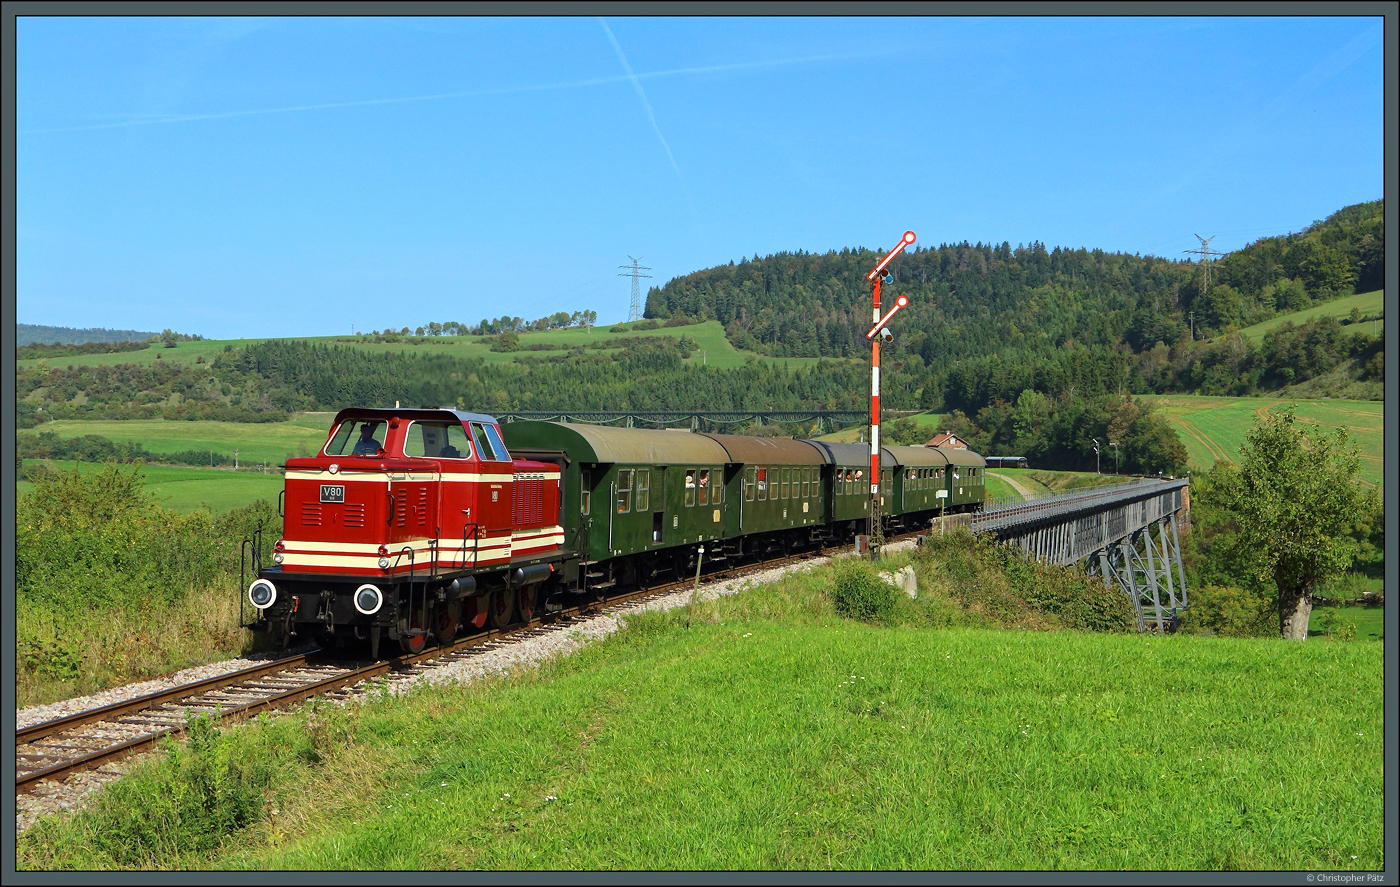 Die V80 BB (265 401) der Bahnbetriebe Blumberg hat am 02.10.2023 mit dem Zug 32 den (durchgeschaltenen) Bahnhof Epfenhofen verlassen und passiert dessen Einfahrsignal. Damit hat der Zug auch den Epfenhofener Viadukt berquert. Nach einigen Minuten und einem weiten Bogen um den Ort Epfenhofen wird der Zug den im Hintergrund sichtbaren Biesenbach-Viadukt befahren.